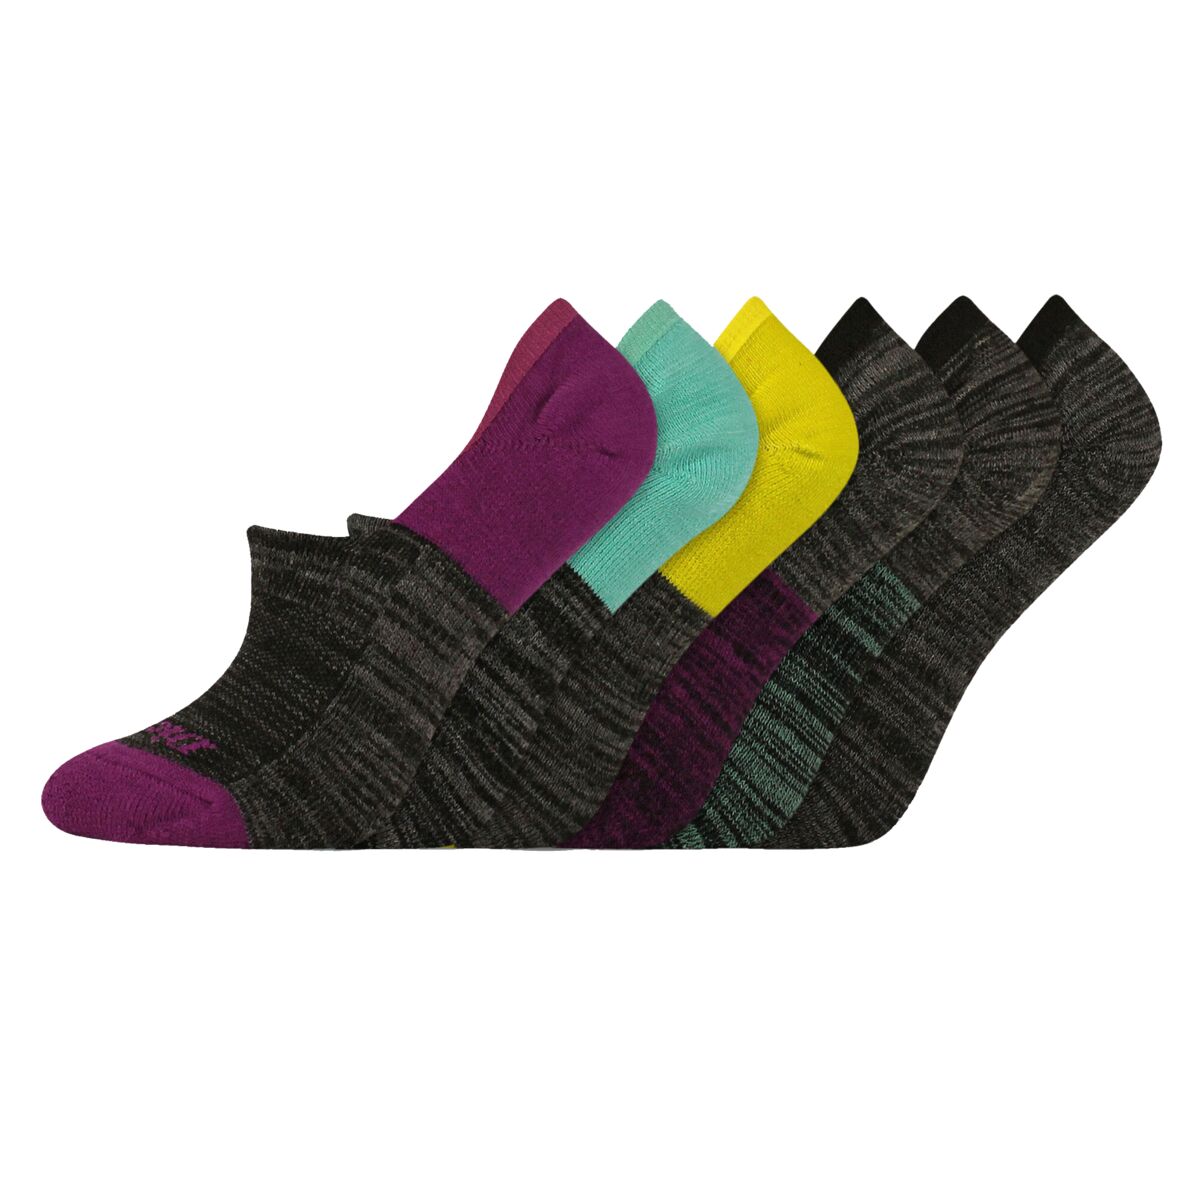 Women's Moisture Control Liner Socks 6-Pack